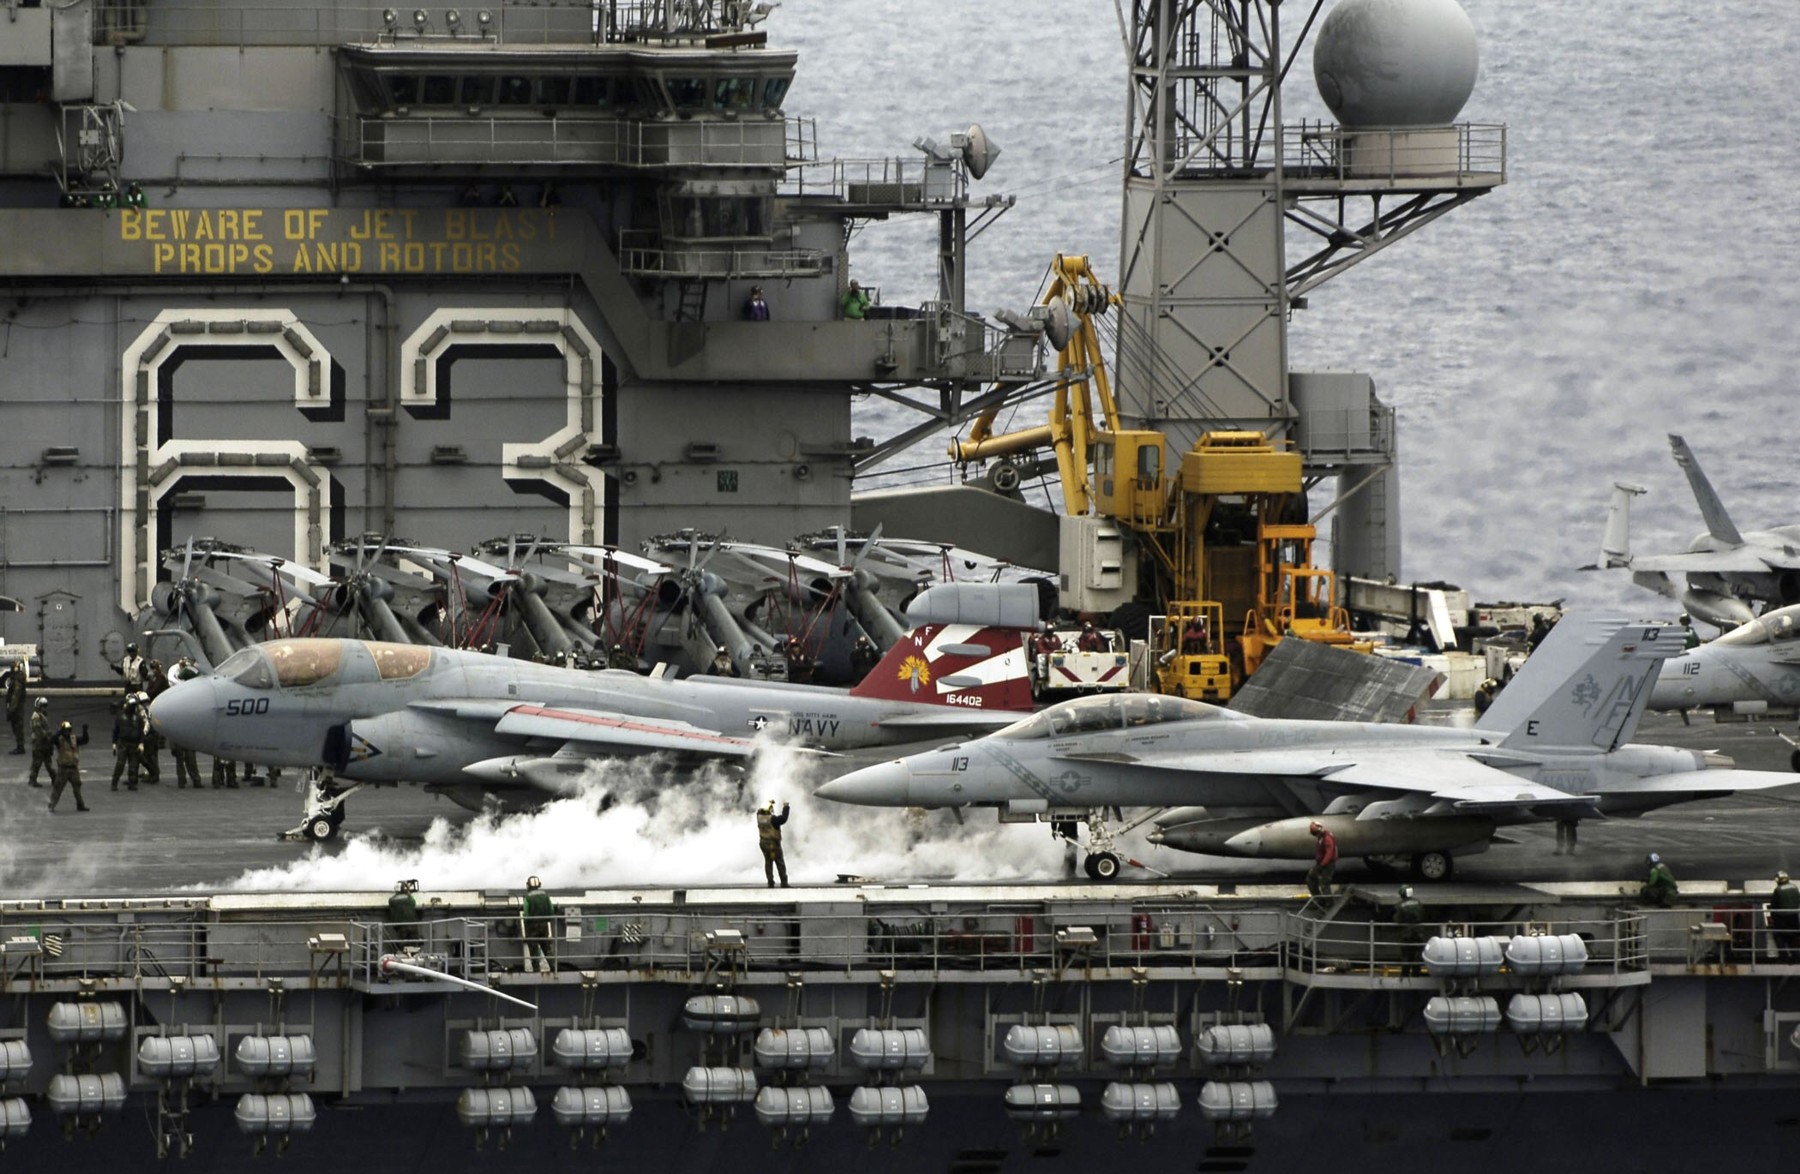 cv-63 uss kitty hawk aircraft carrier air wing cvw-5 us navy 18 flyout prowler hornet